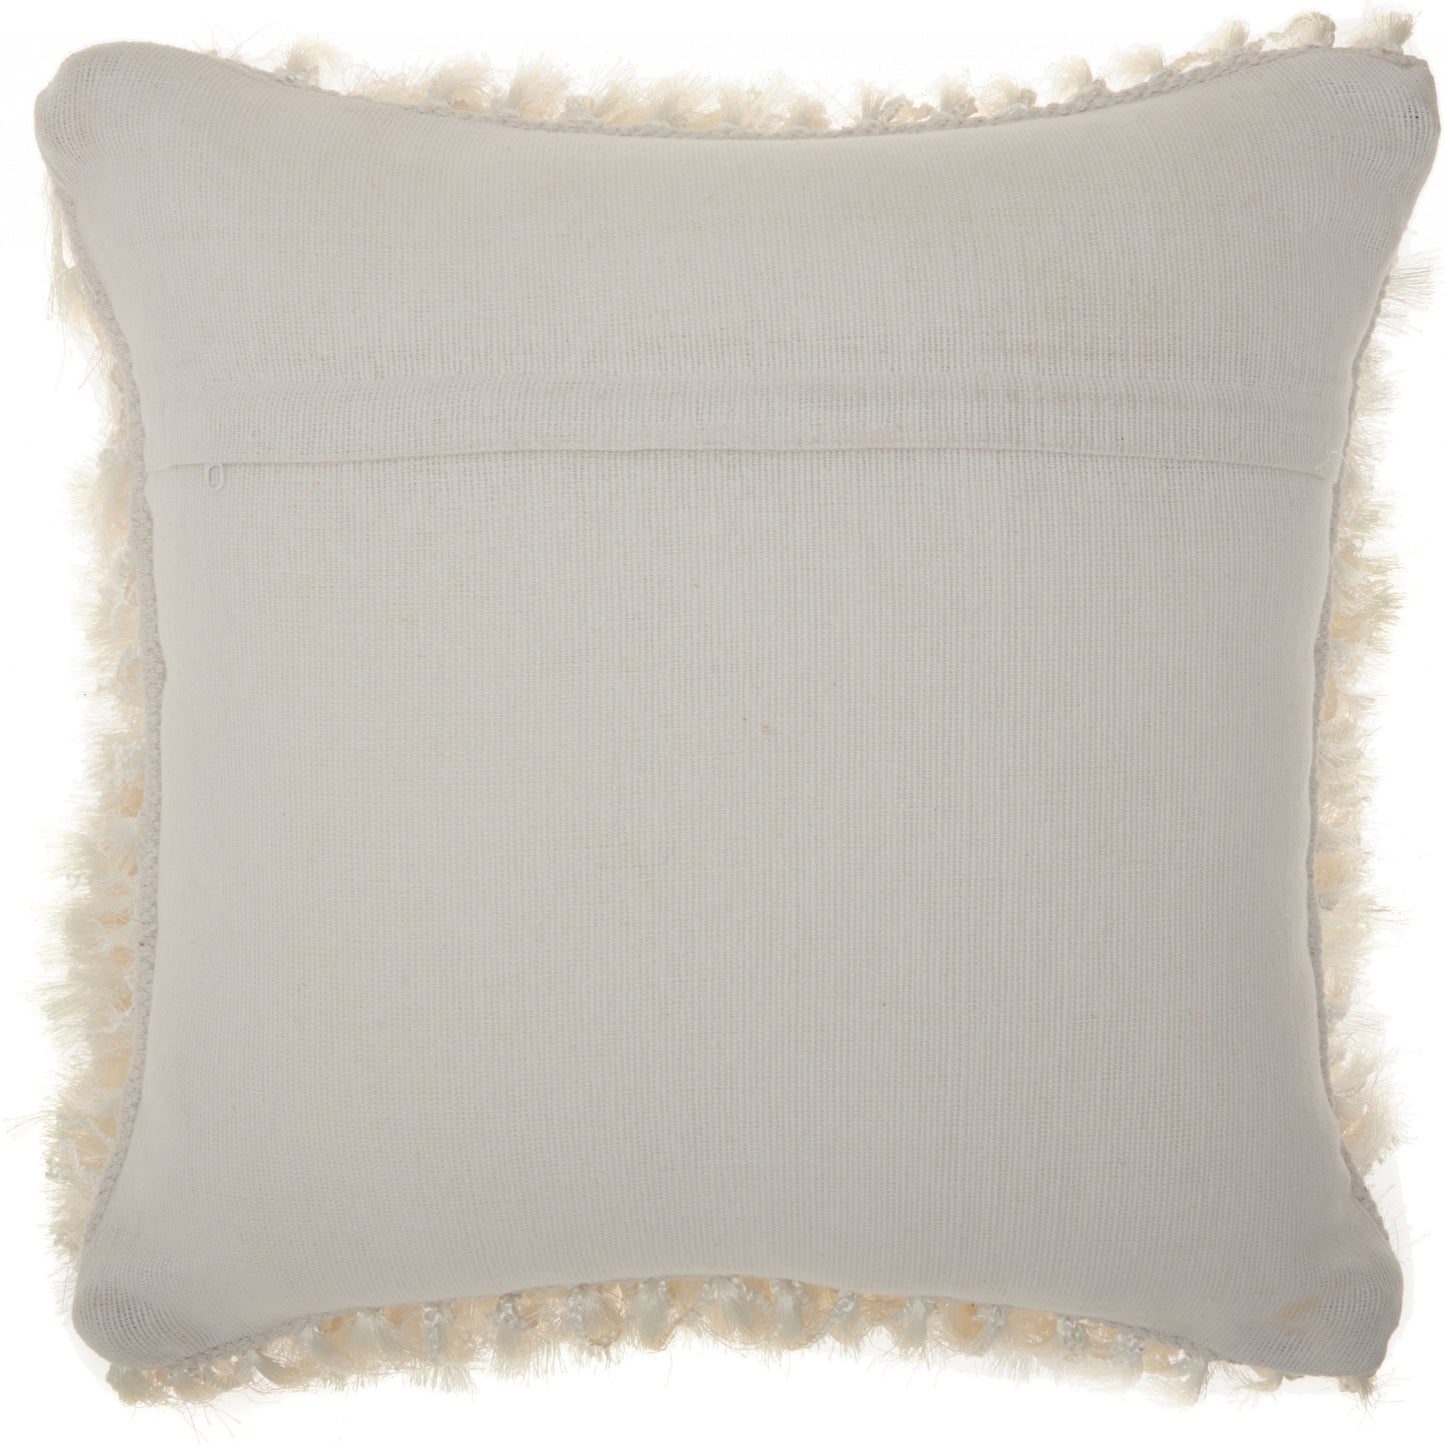 Soft White Shag Accent Pillow